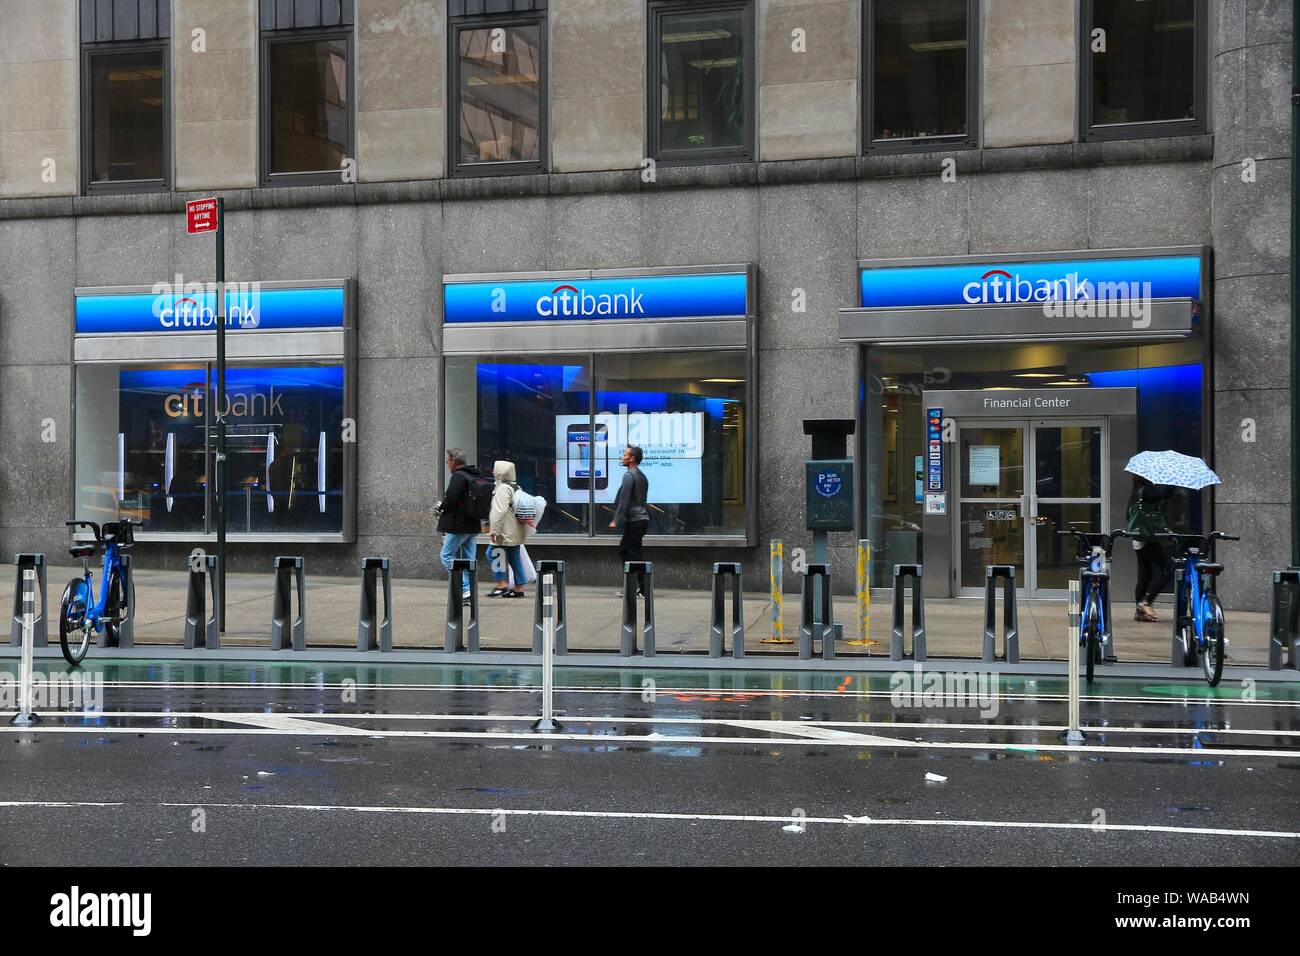 NEW YORK, USA - 10 juin 2013 : les gens à pied par la direction générale de la Citibank, à New York. Citibank est une partie de Citigroup, fournisseur de services financiers multinationaux fro Banque D'Images